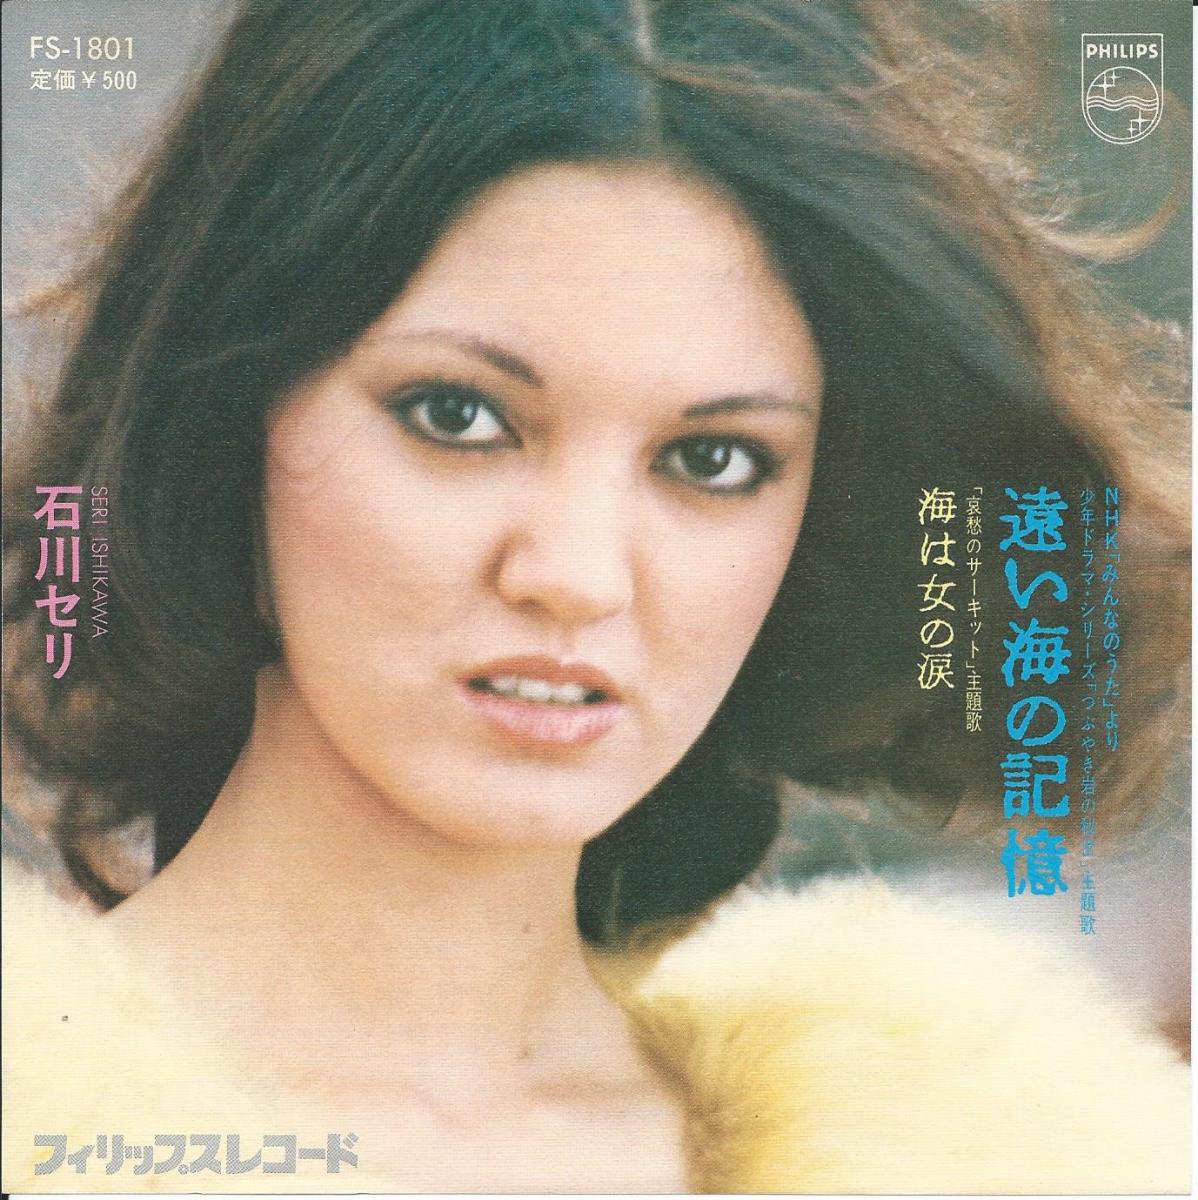 石川セリ SERI ISHIKAWA / 遠い海の記憶 / 海は女の涙 (7) - HIP TANK RECORDS